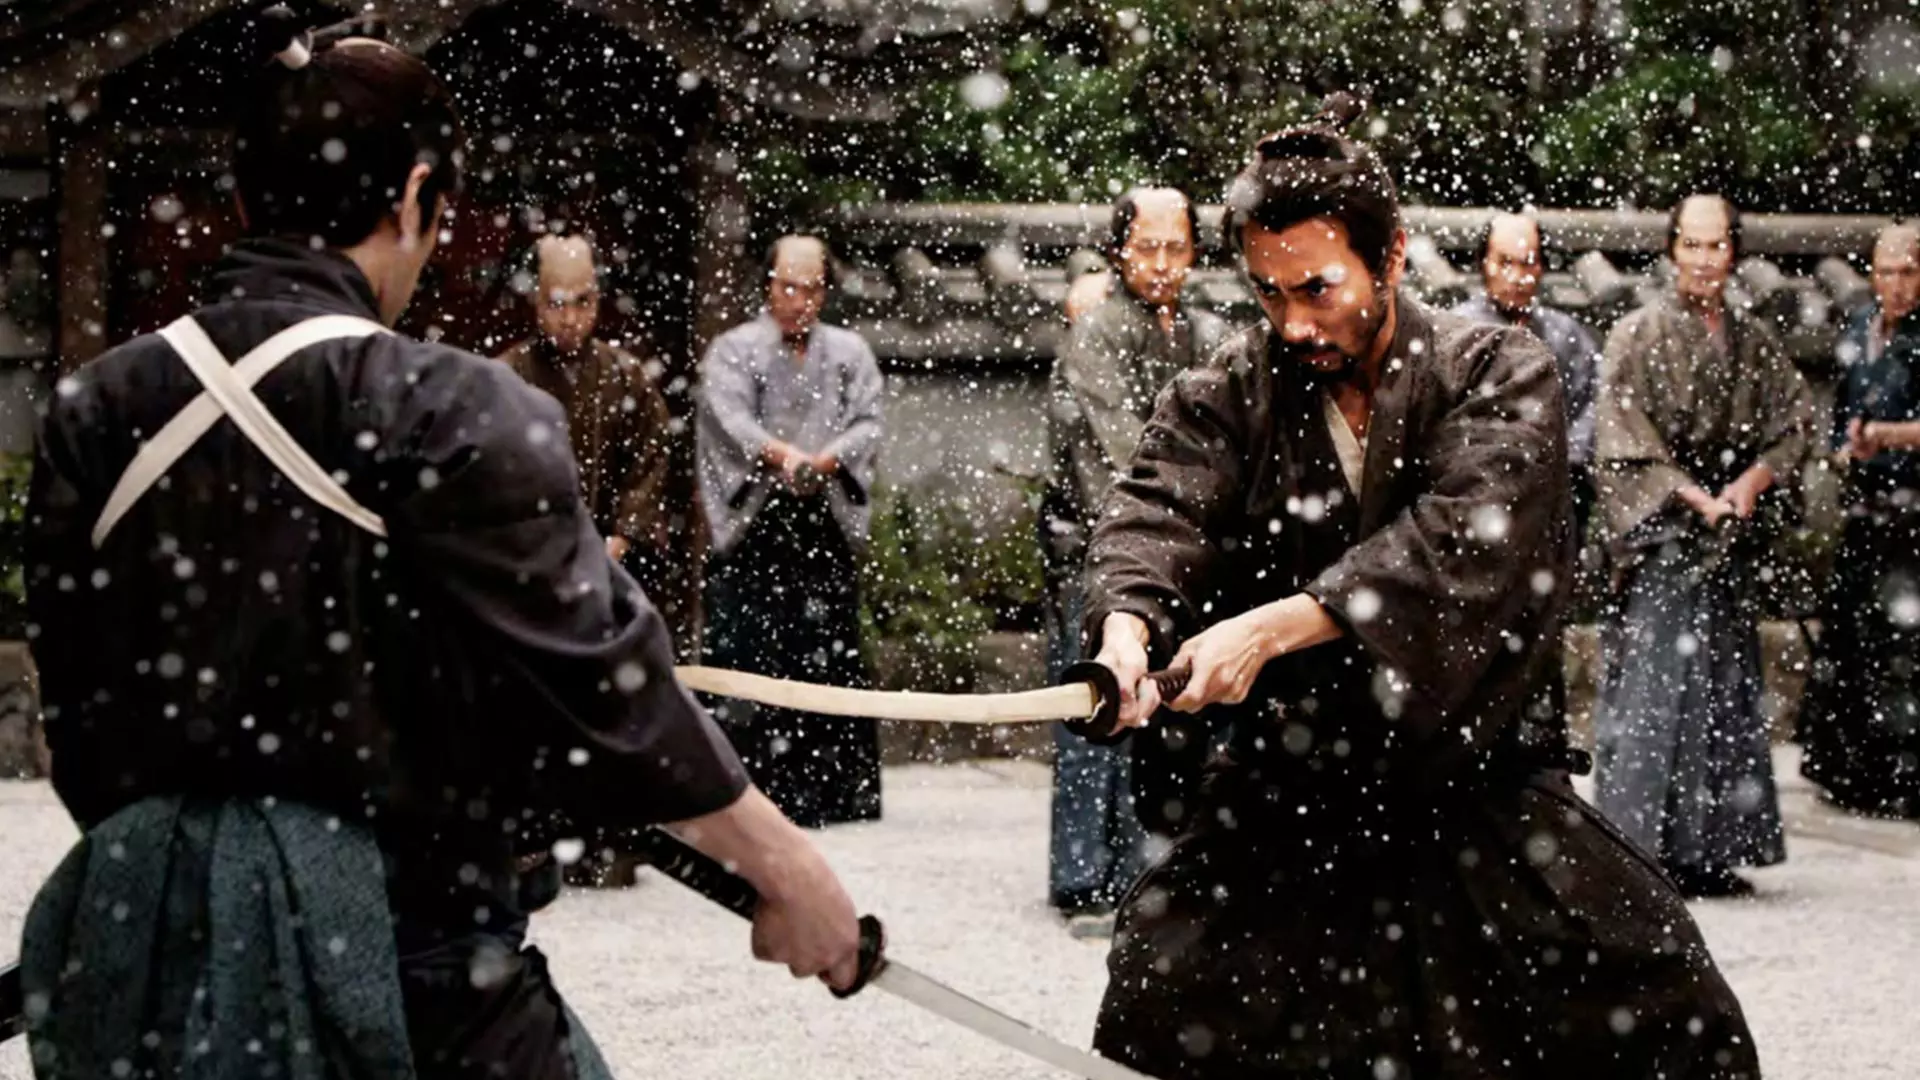 سامورایی در حال مبارزه در فیلم هاراگیری مرگ یک سامورایی